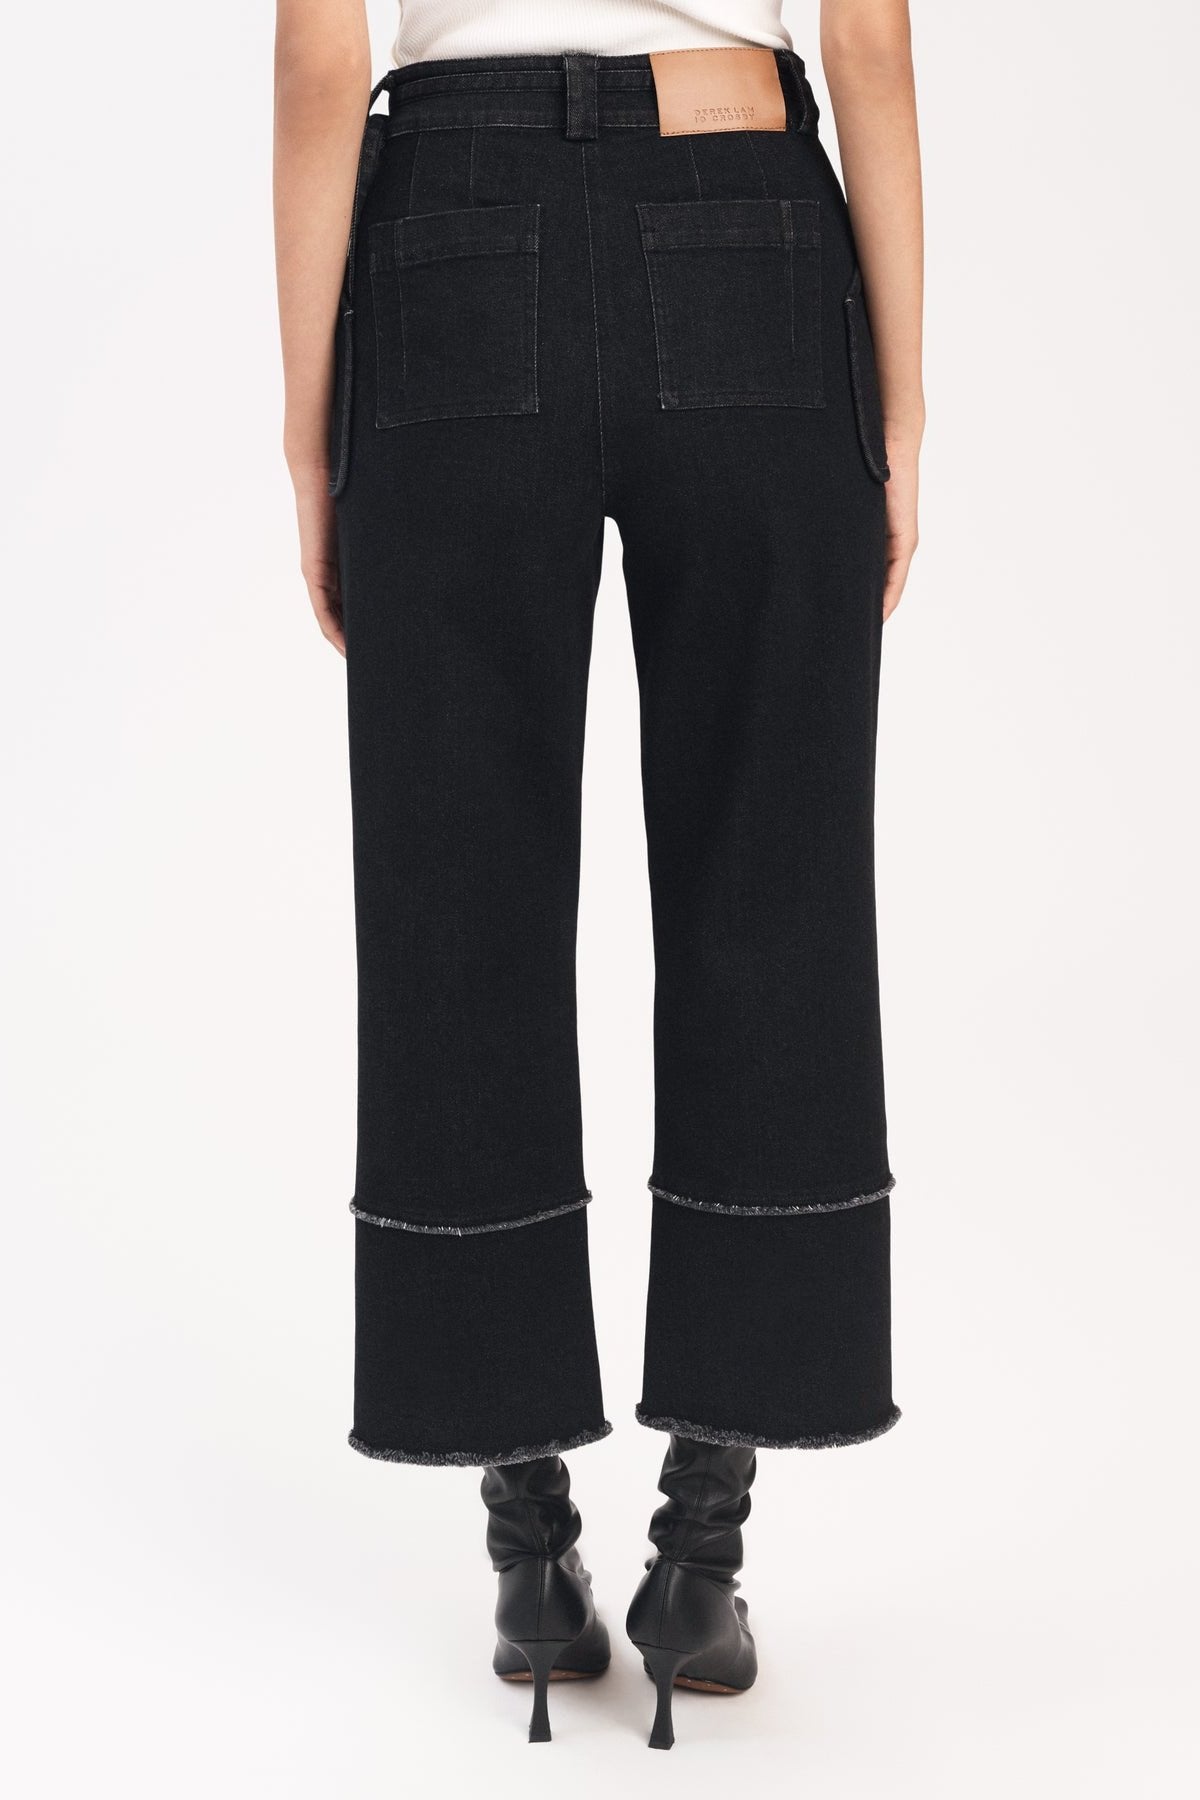 Zuri Cropped Wide Leg Pant in Black - shop-olivia.com